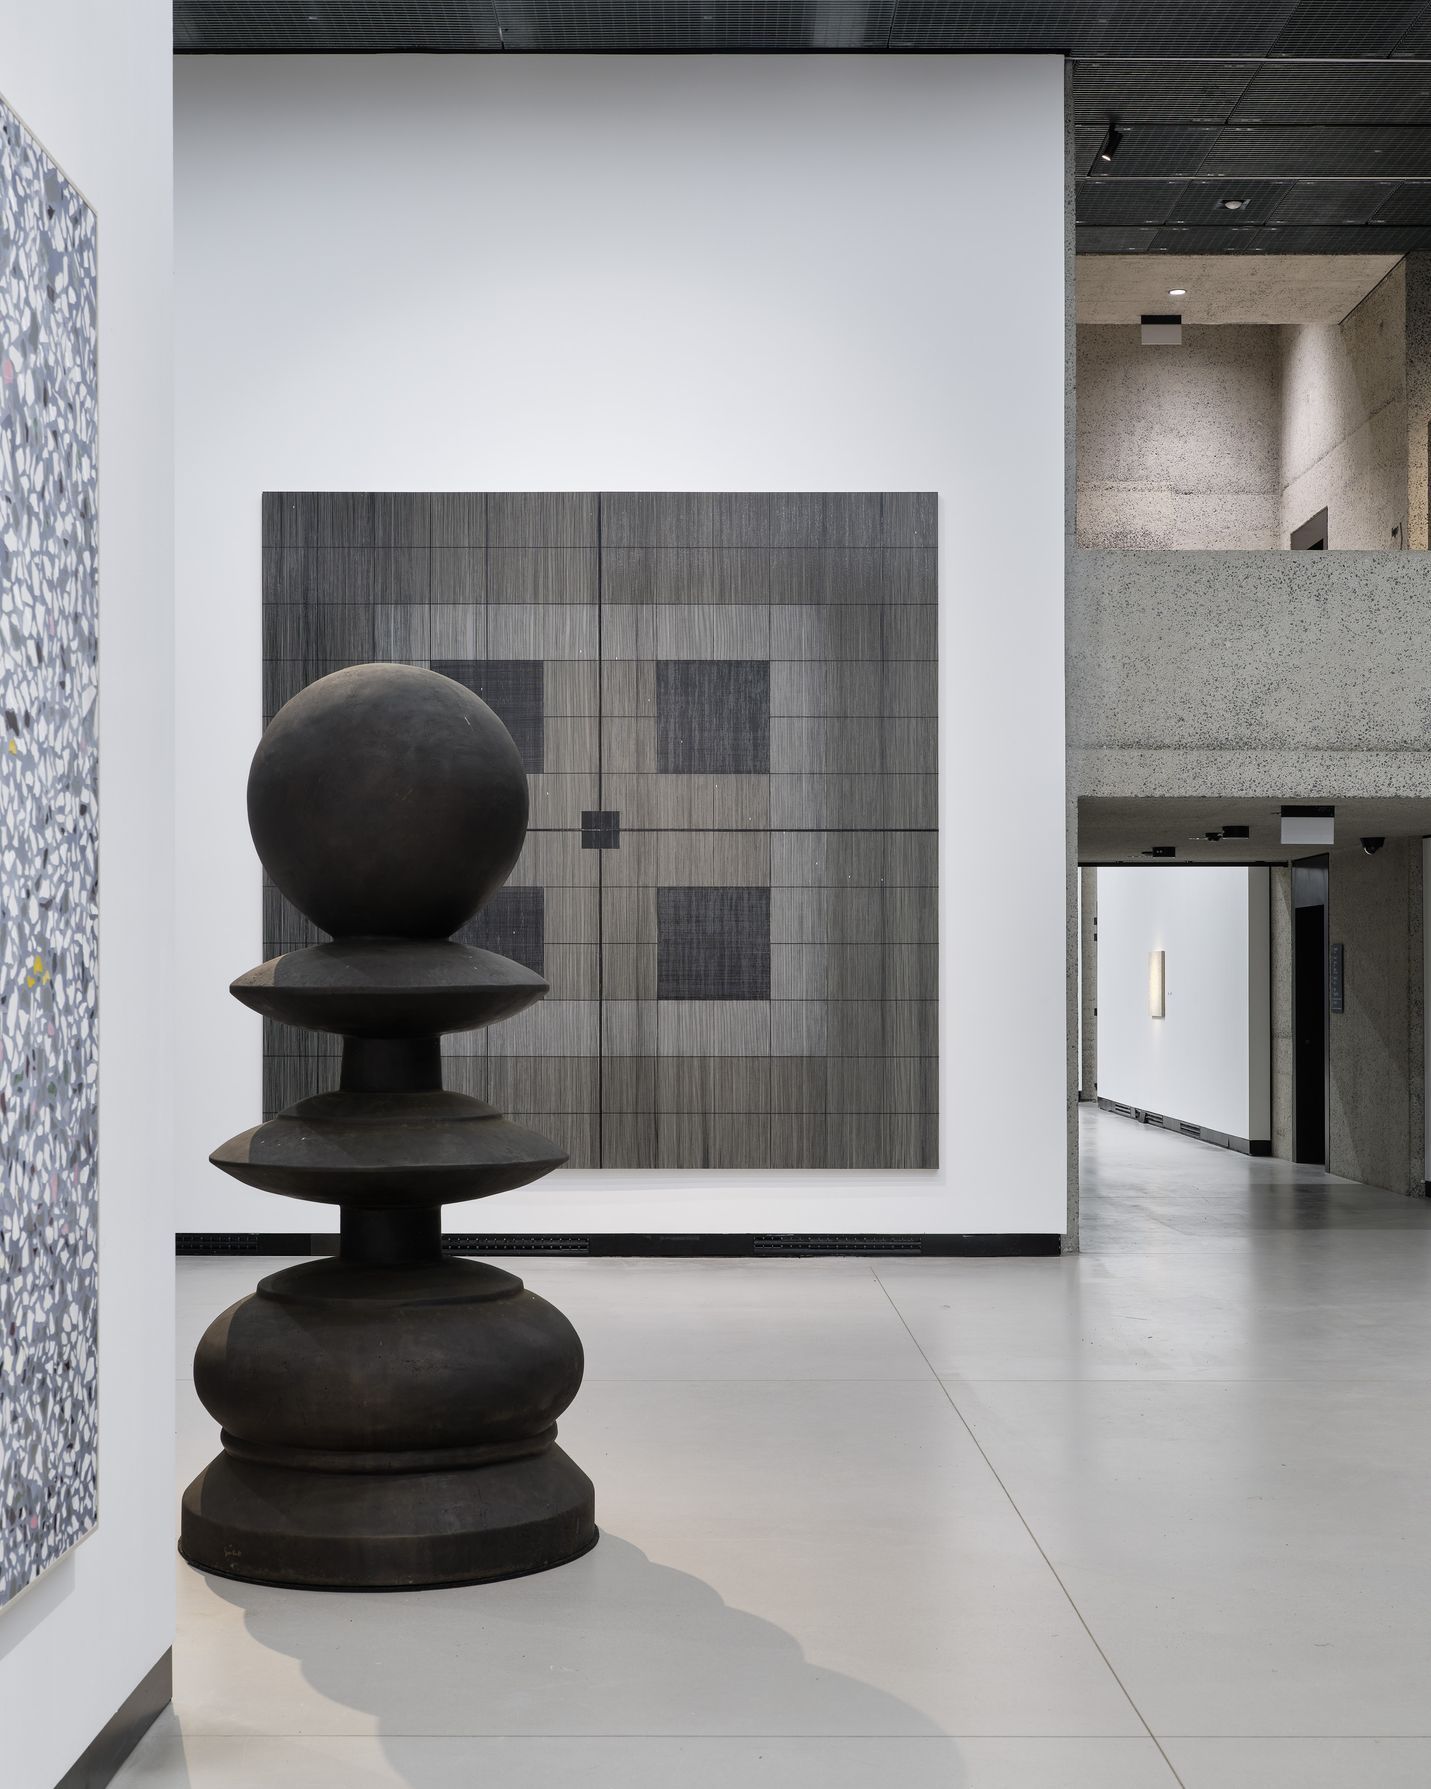 Gregor Hildebrandt, Kunsthalle Praha, 2022